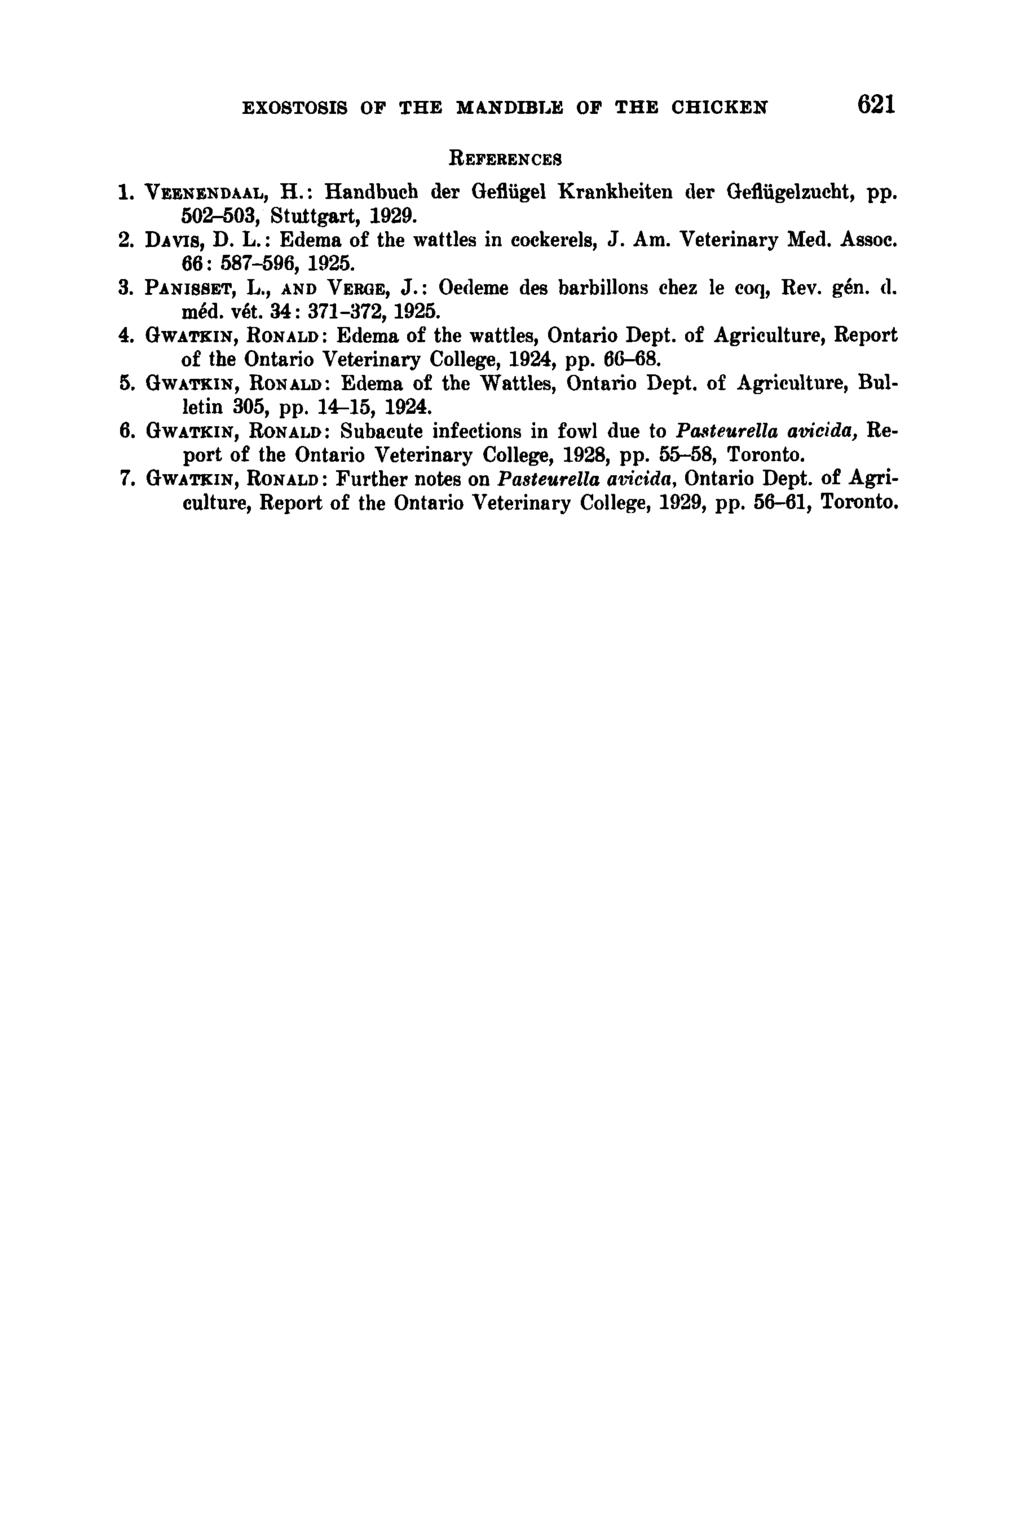 EXOSTOSIS OF THE MANDIBLE OF THE CHICKEN 62 1 REFERENCES 1. VEENENDAAL, H. : Handbuch der Oefliigel Krankheiten der Geflugelzucht, pp. 502-503, Stuttgart, 1929. 2. DAVIS, D. L.